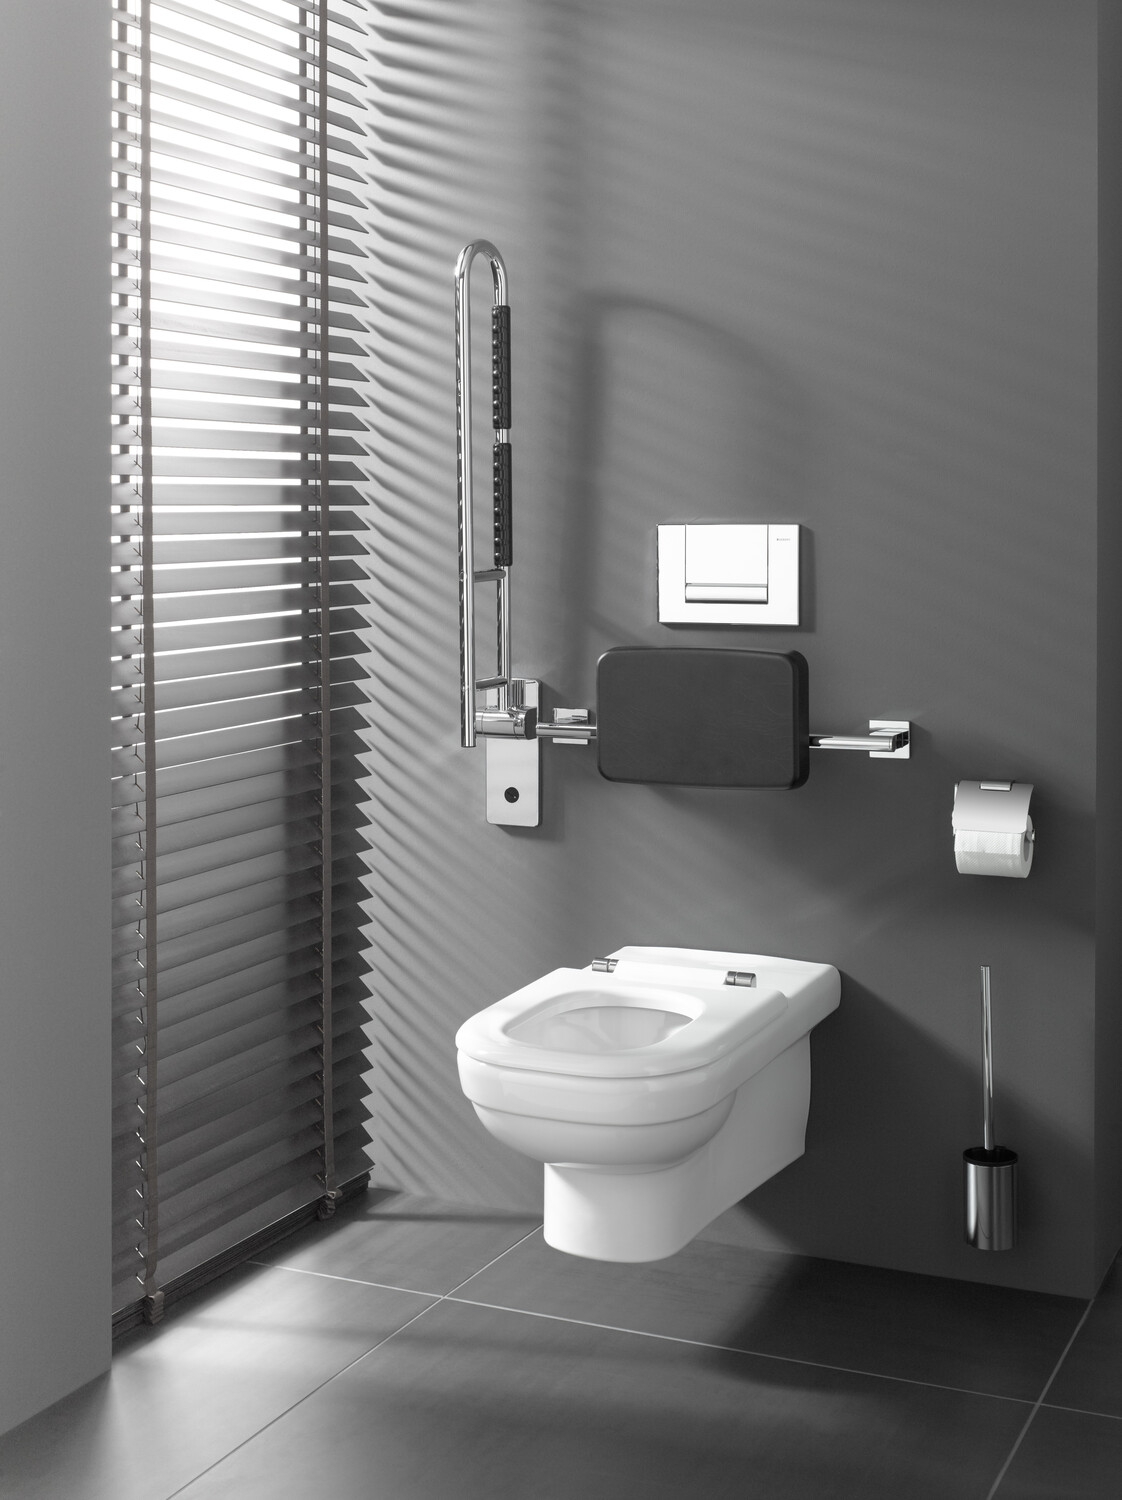 emco Toilettenbürstengarnitur „system 2“ Standmodell in chrom